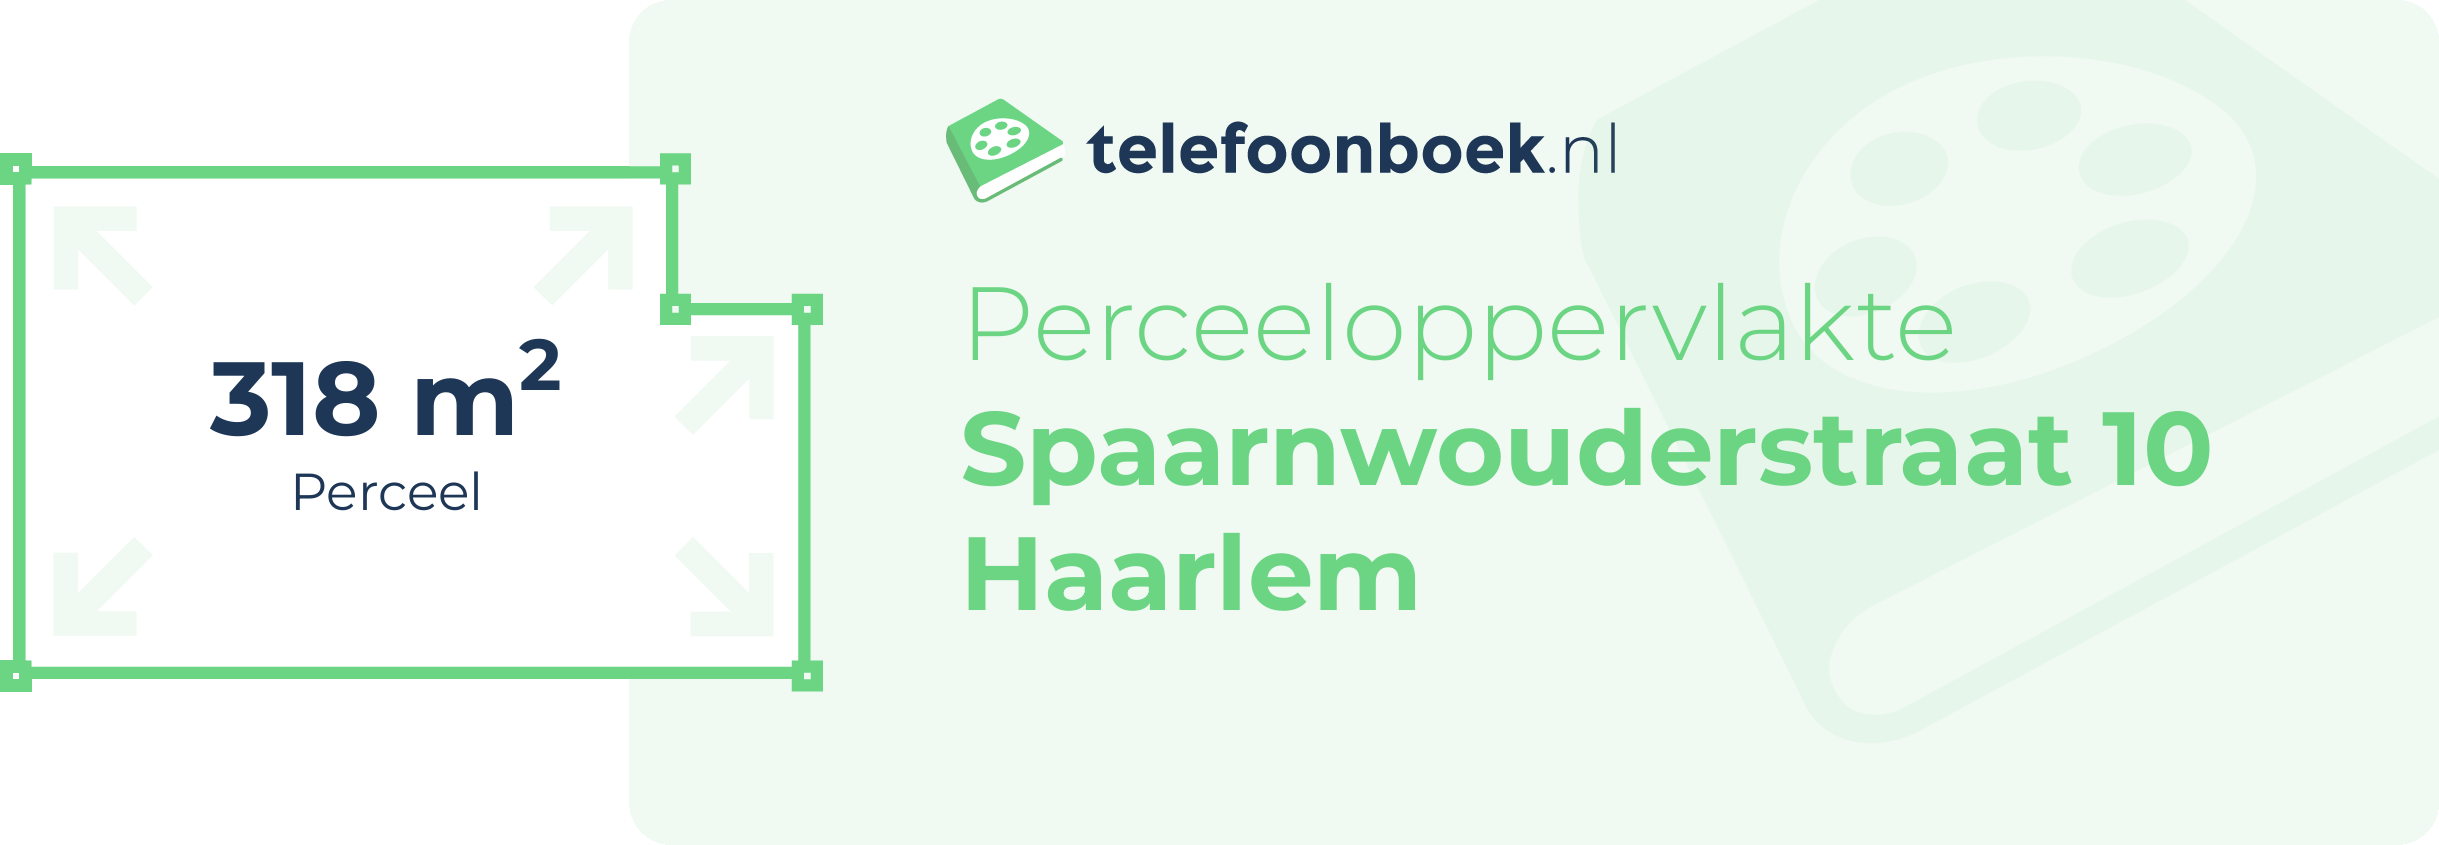 Perceeloppervlakte Spaarnwouderstraat 10 Haarlem